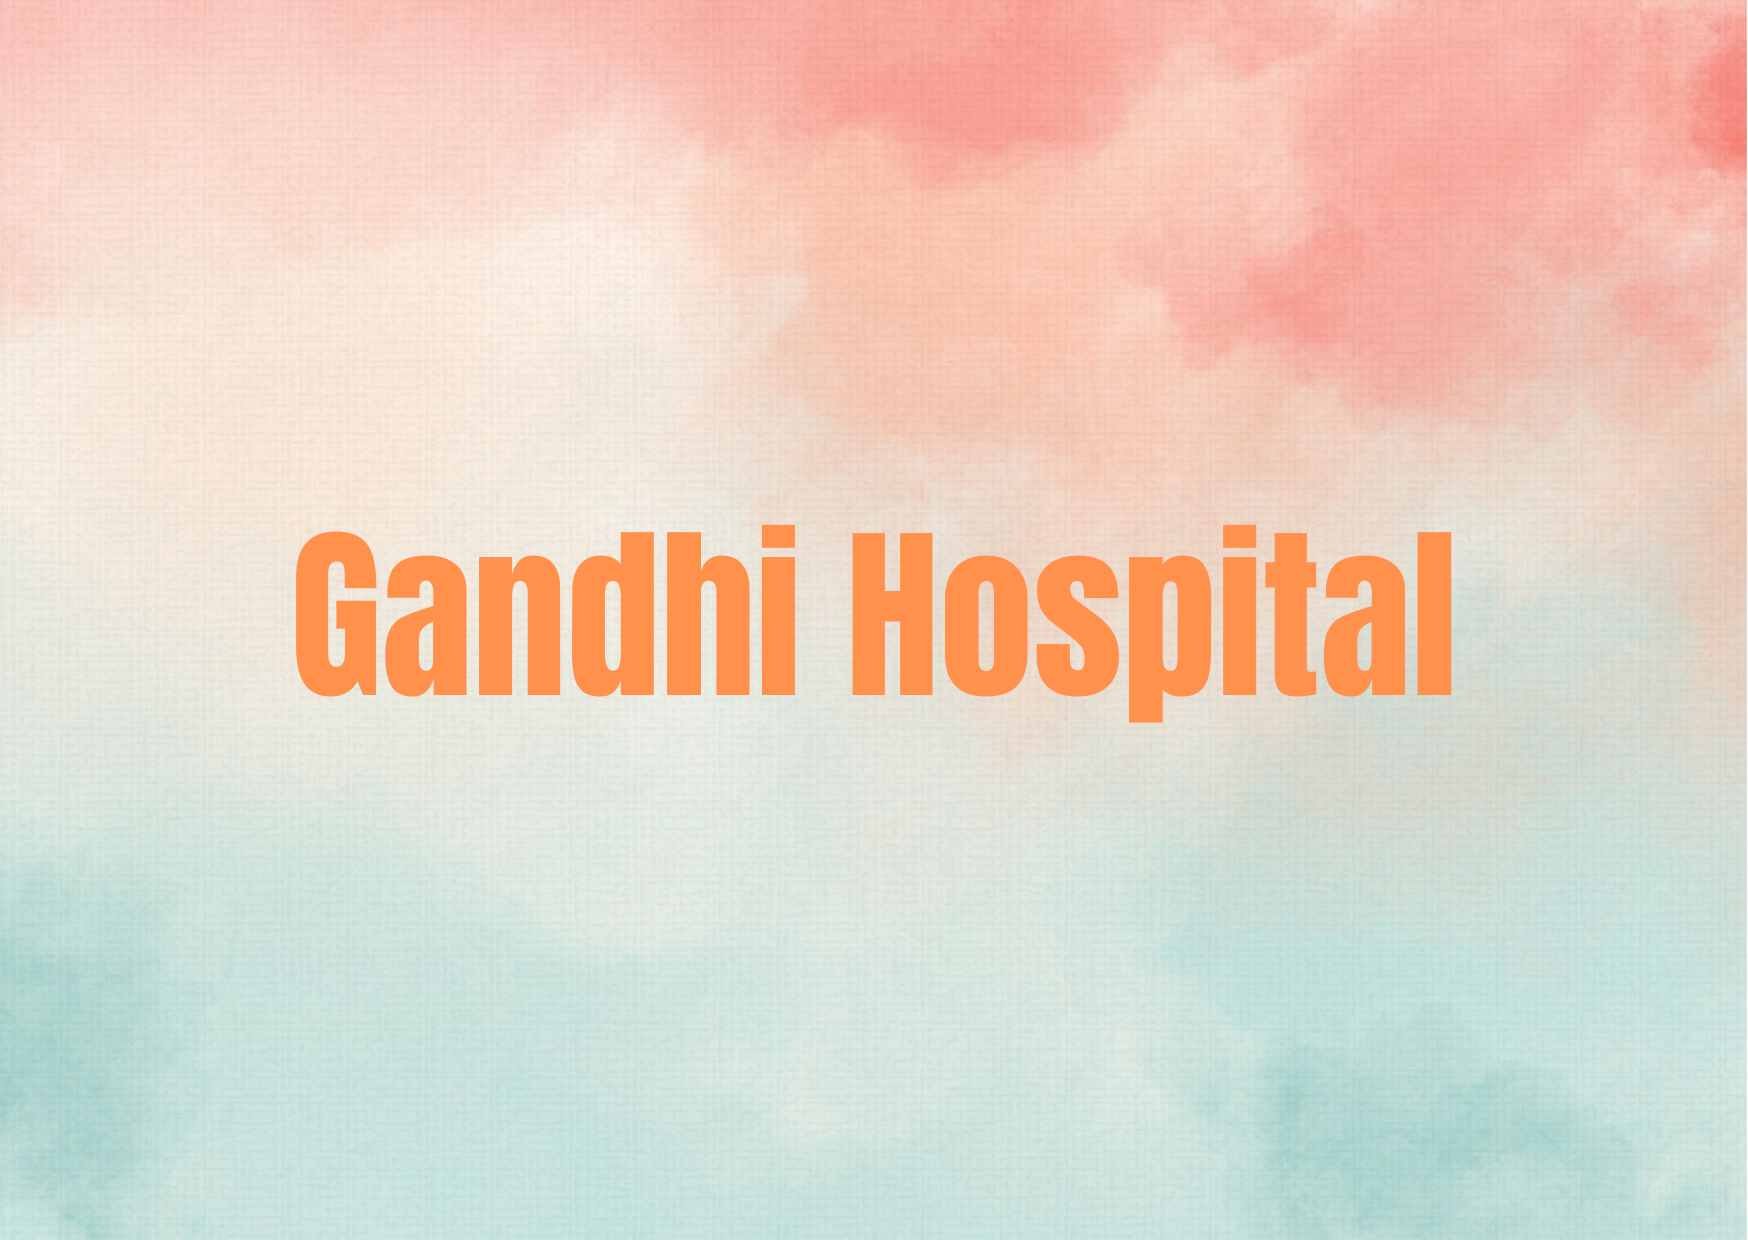 Gandhi Hospital,   